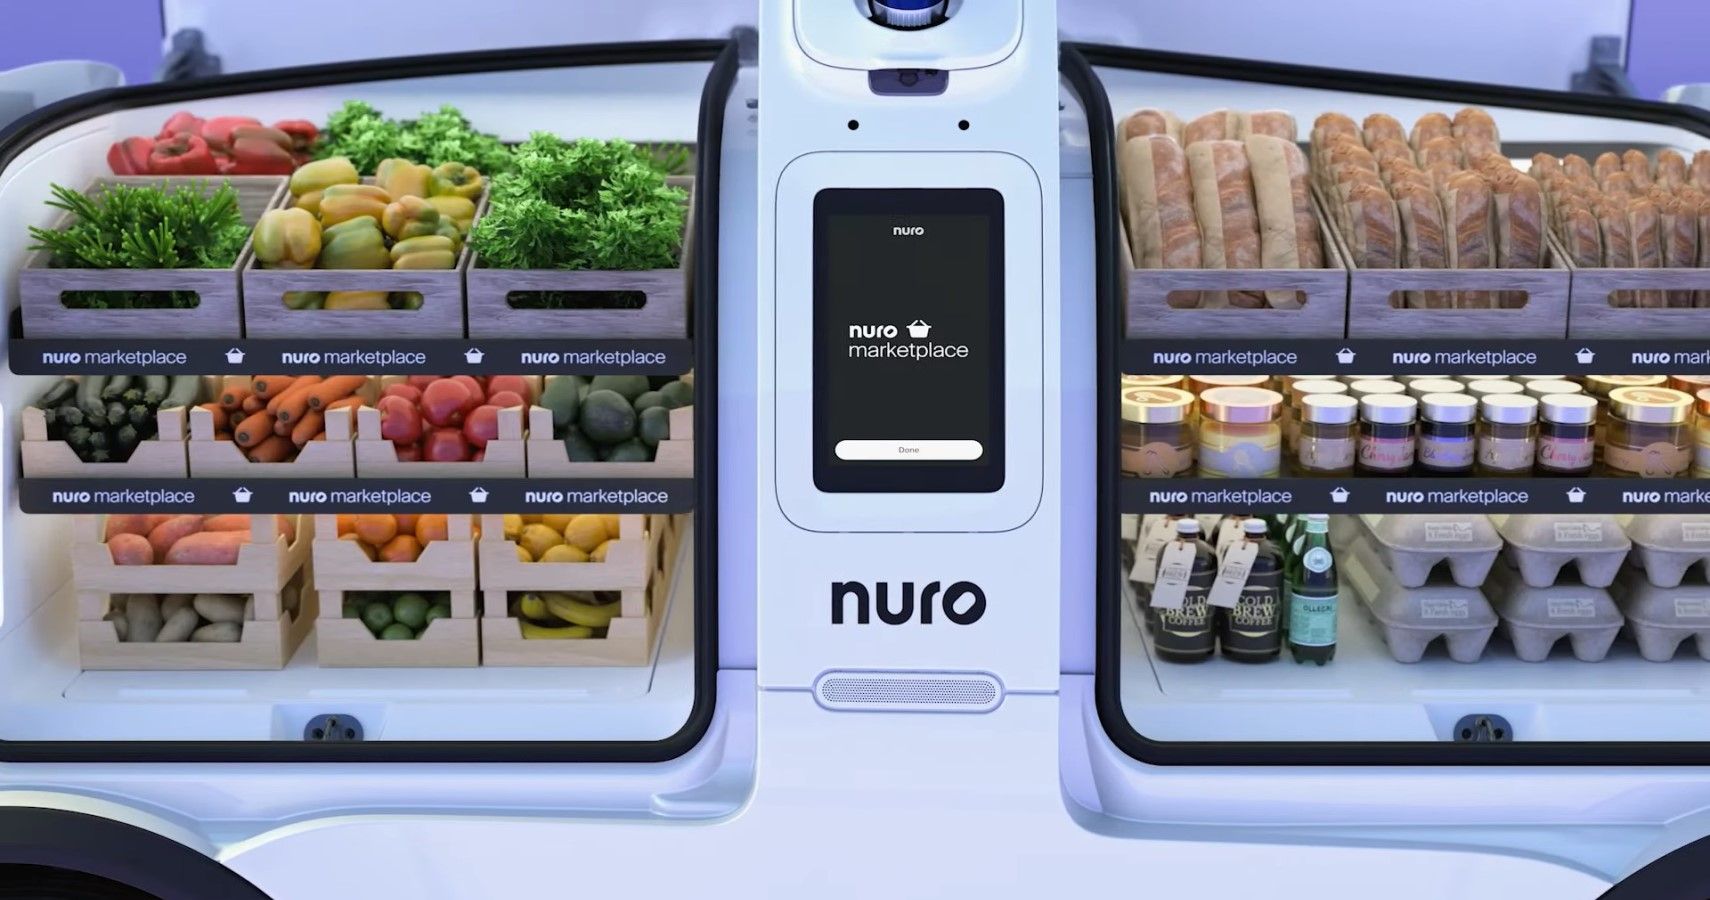 Nuro autonomous vehicle compartment close-up view